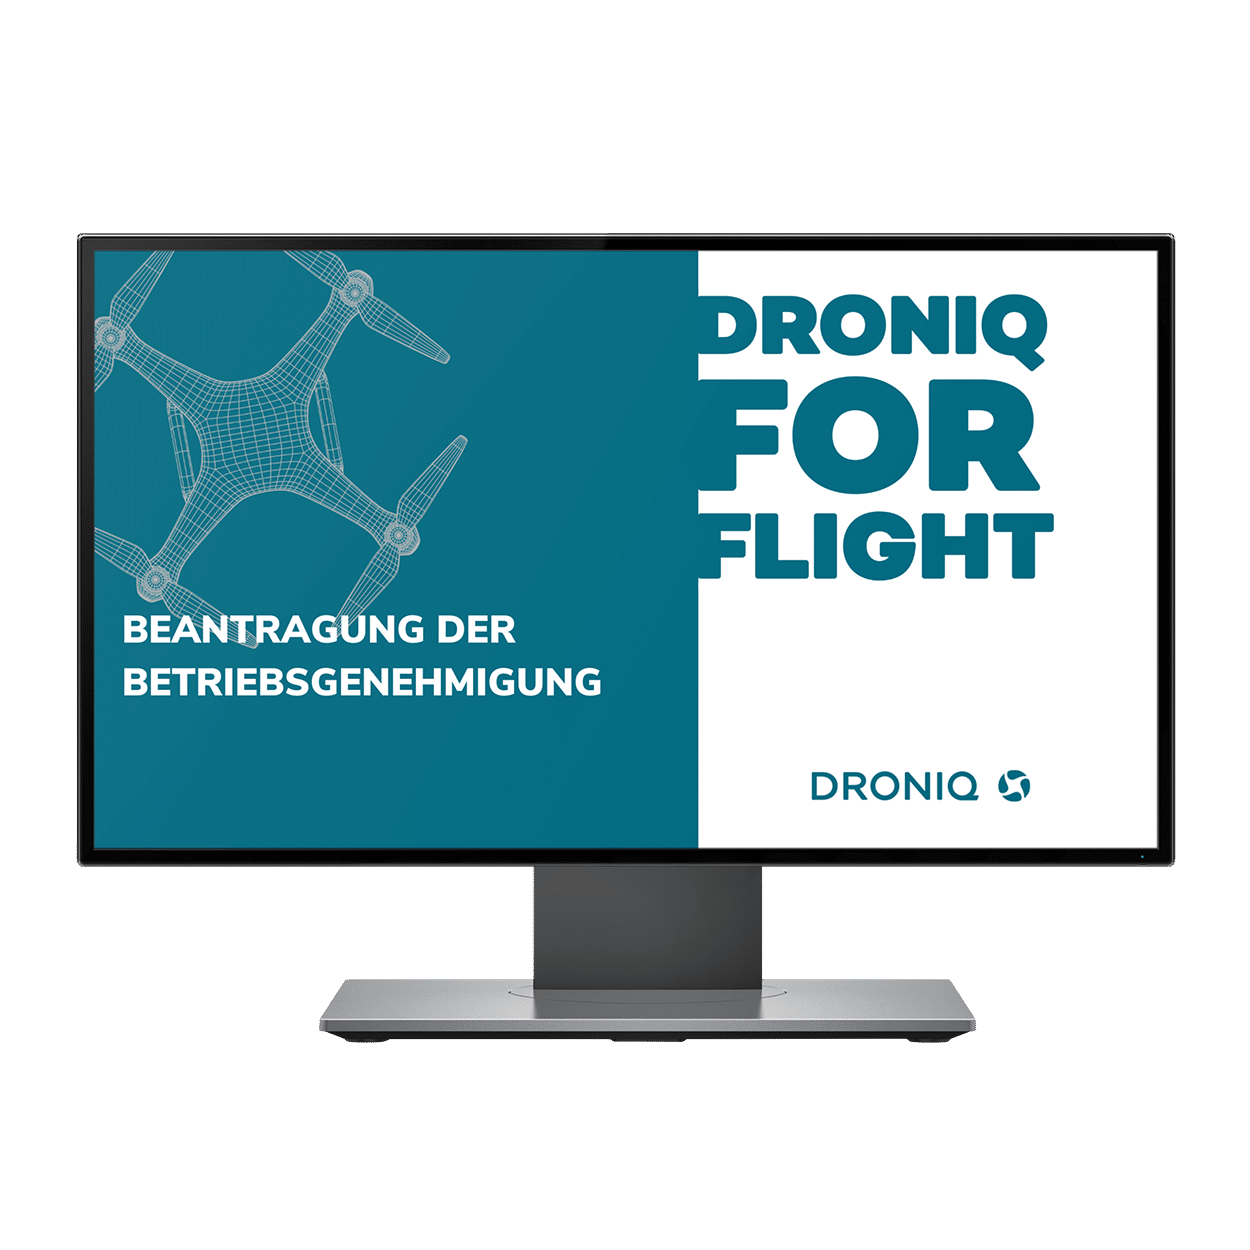 Droniq unterstützt bei Erstellung & Ausfüllen der Betriebsgenehmigungsanträge sowie Einreichung bei der zuständigen Luftfahrtbehörde.